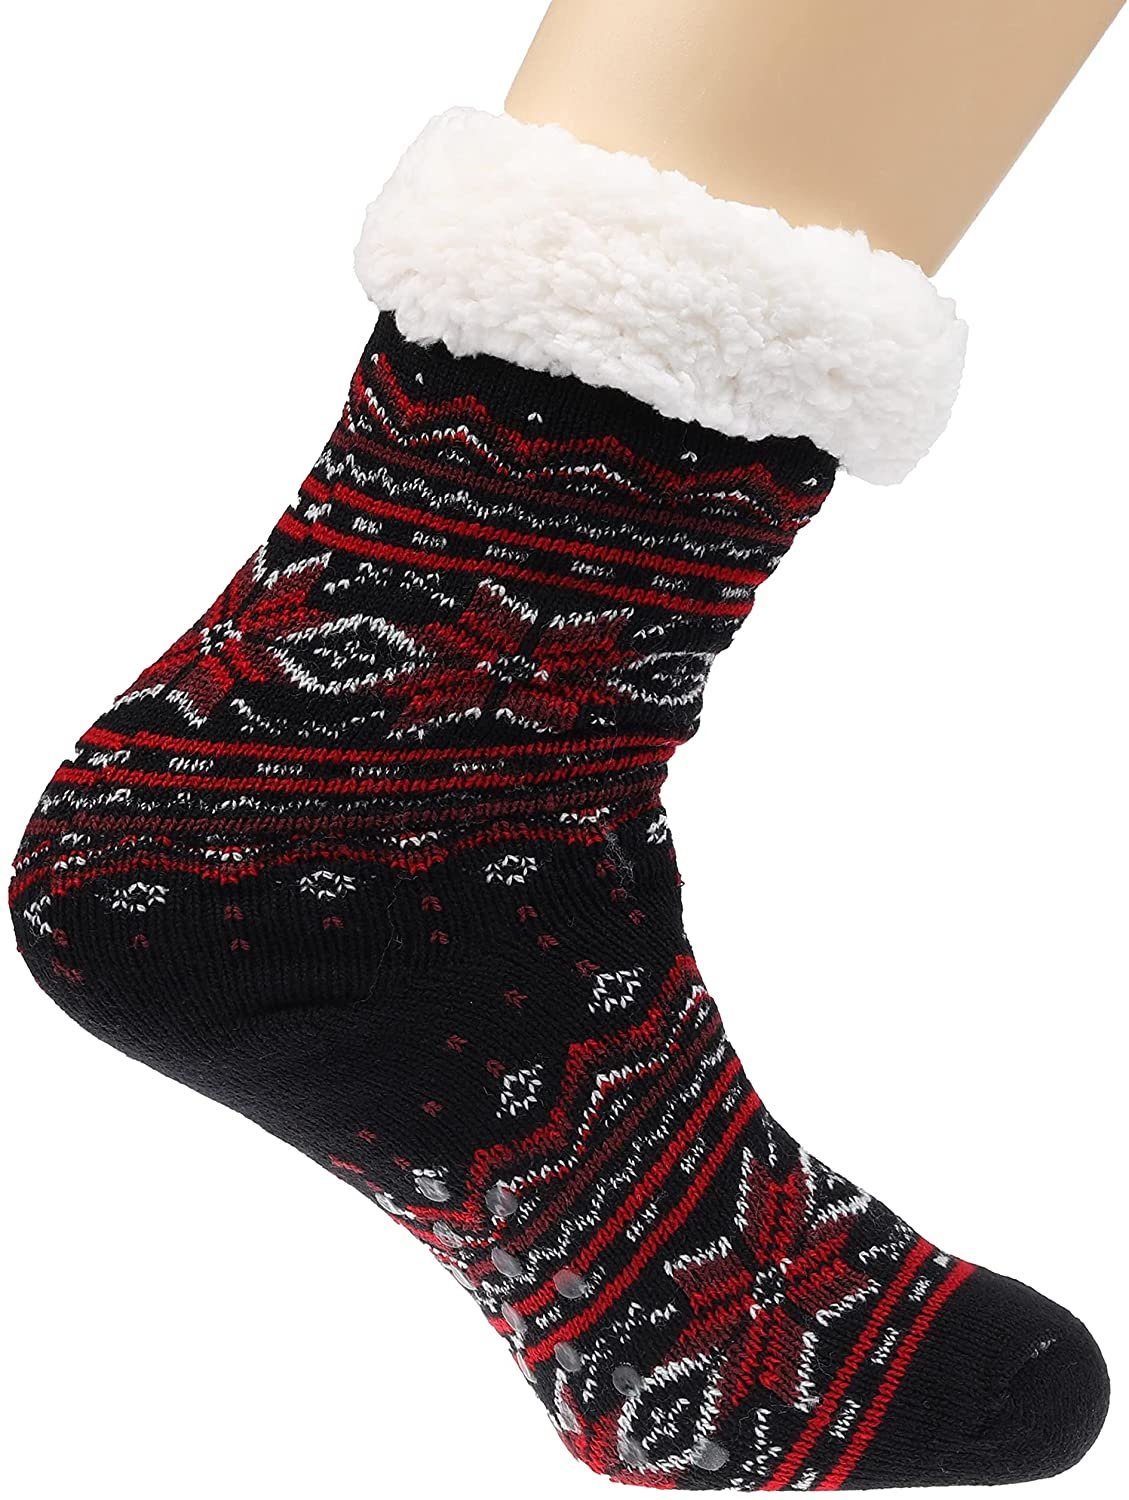 Women Soft Cozy Fuzzy Sherpa Fleece Lined Slipper Socks Home Thermal Slipper  LOT | eBay